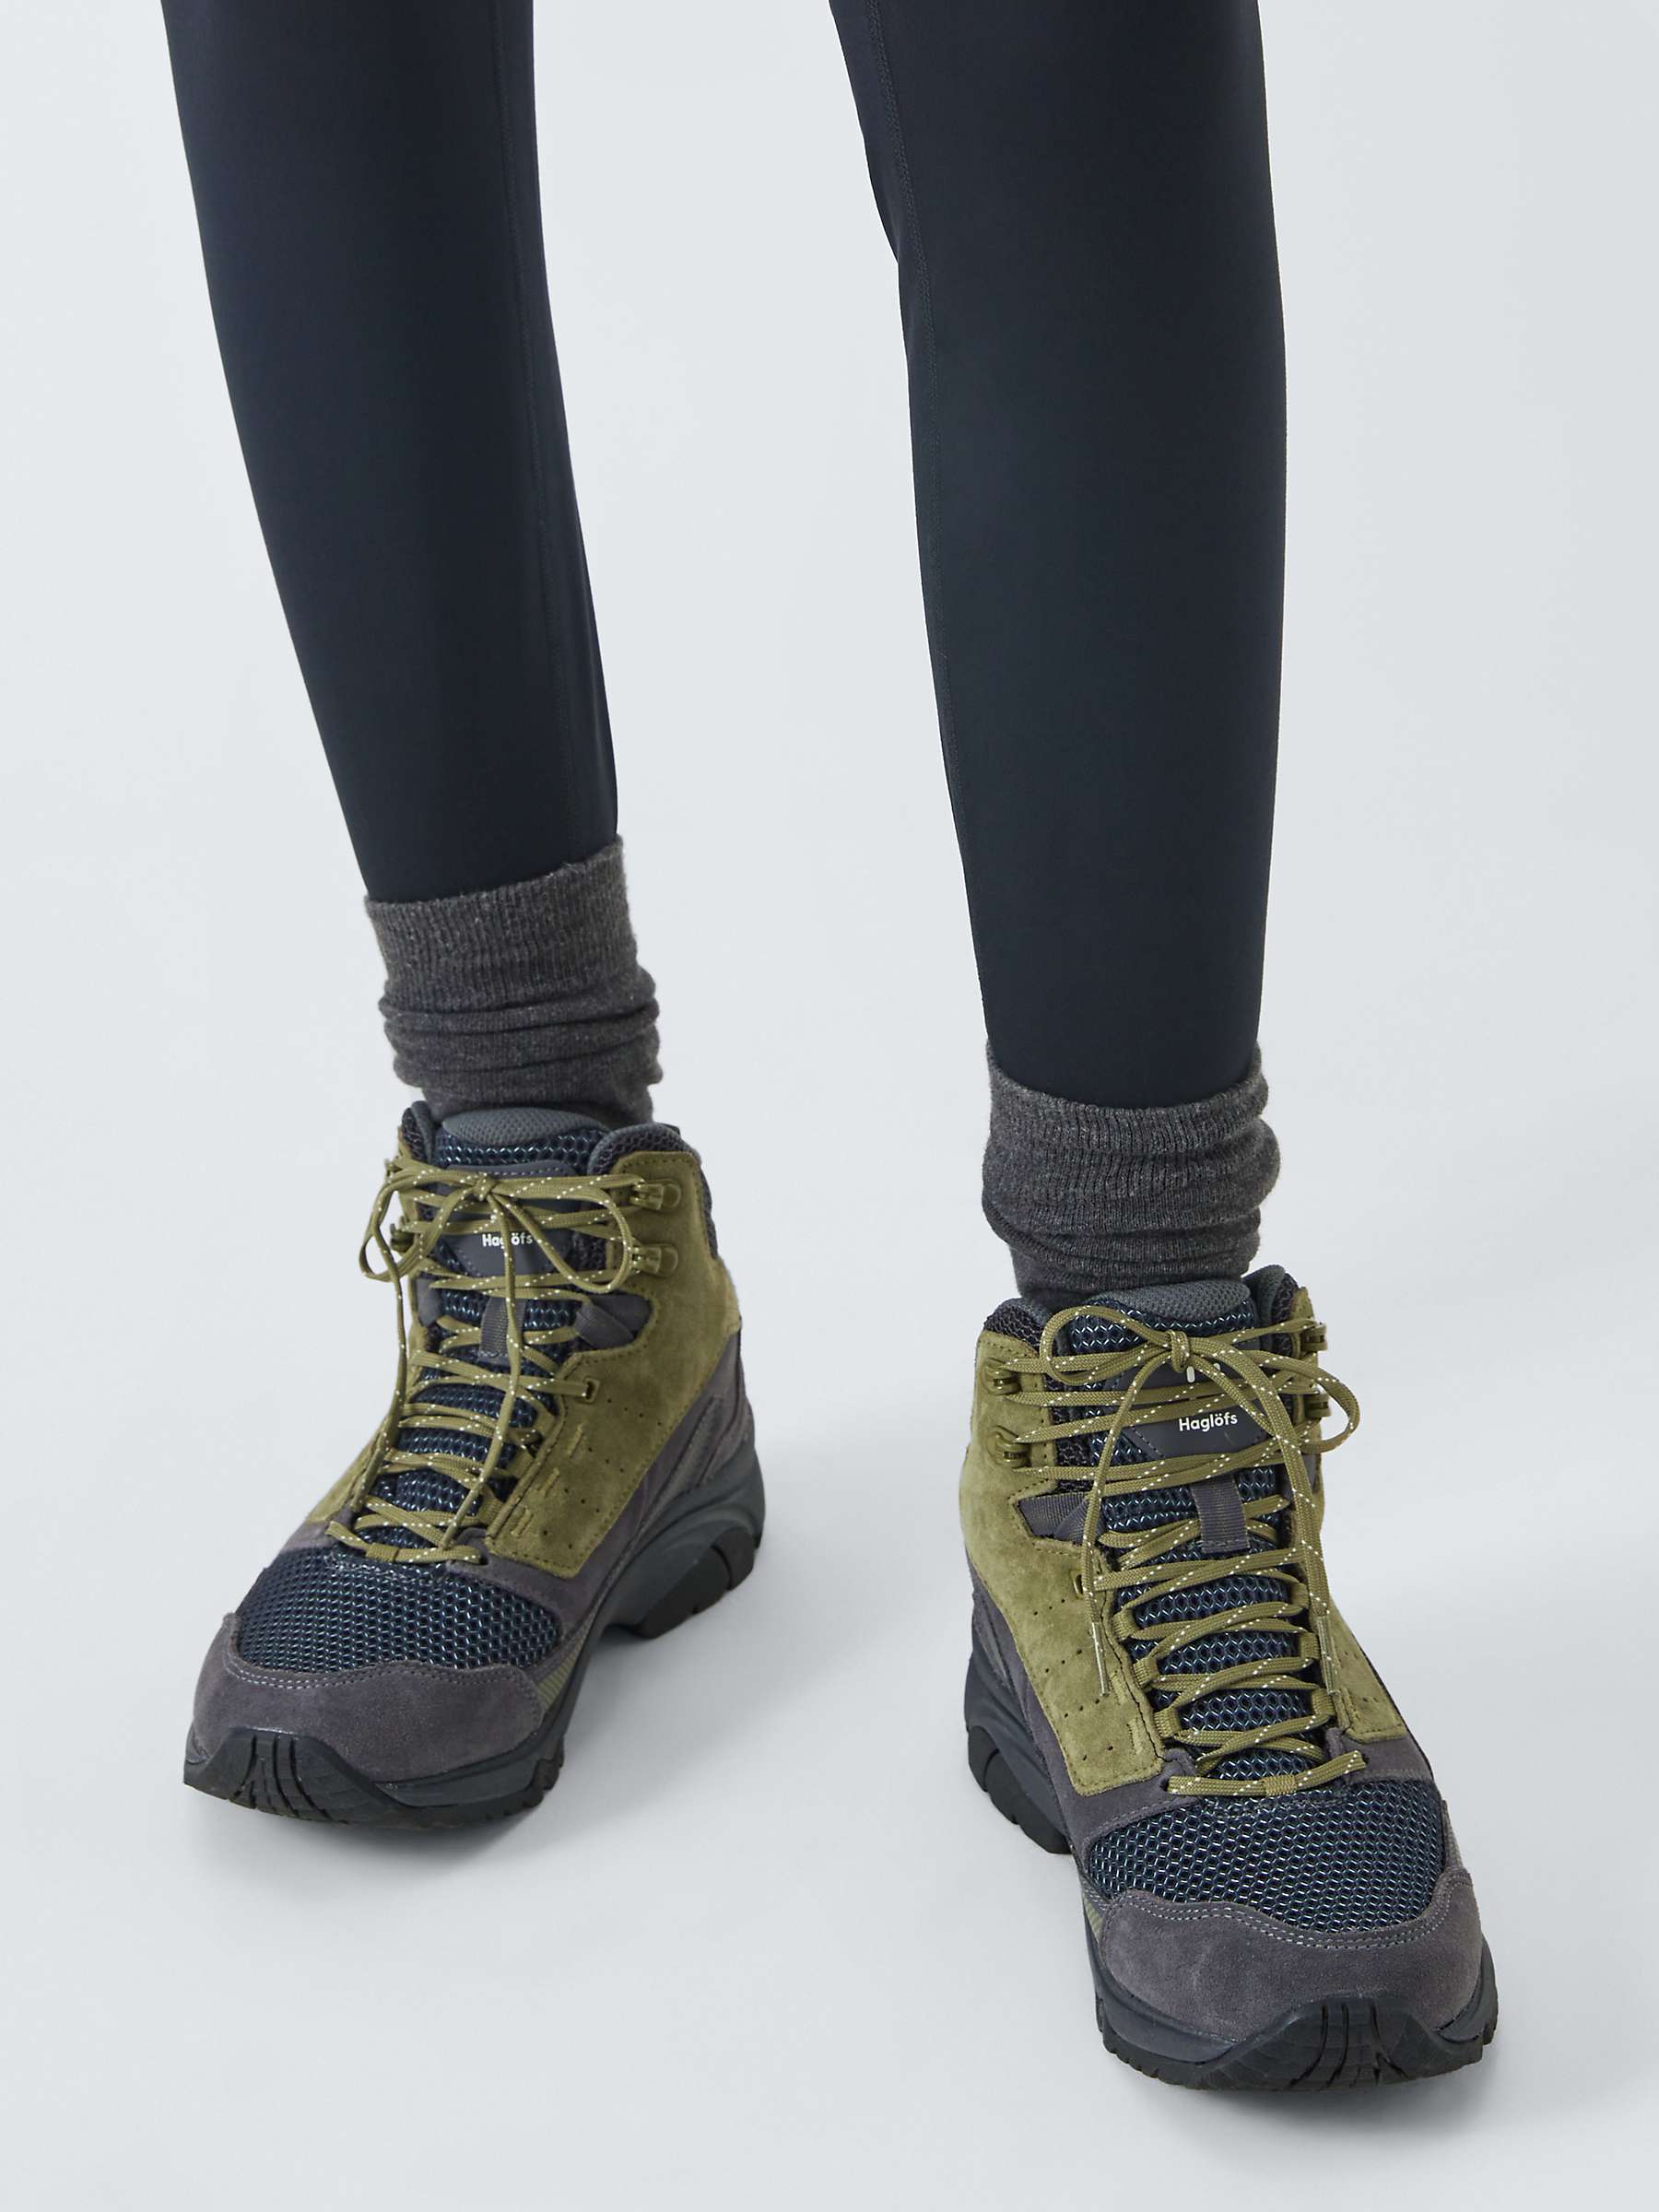 Buy Haglöfs Modern Hiking Boots, Magnetite/Olive Online at johnlewis.com